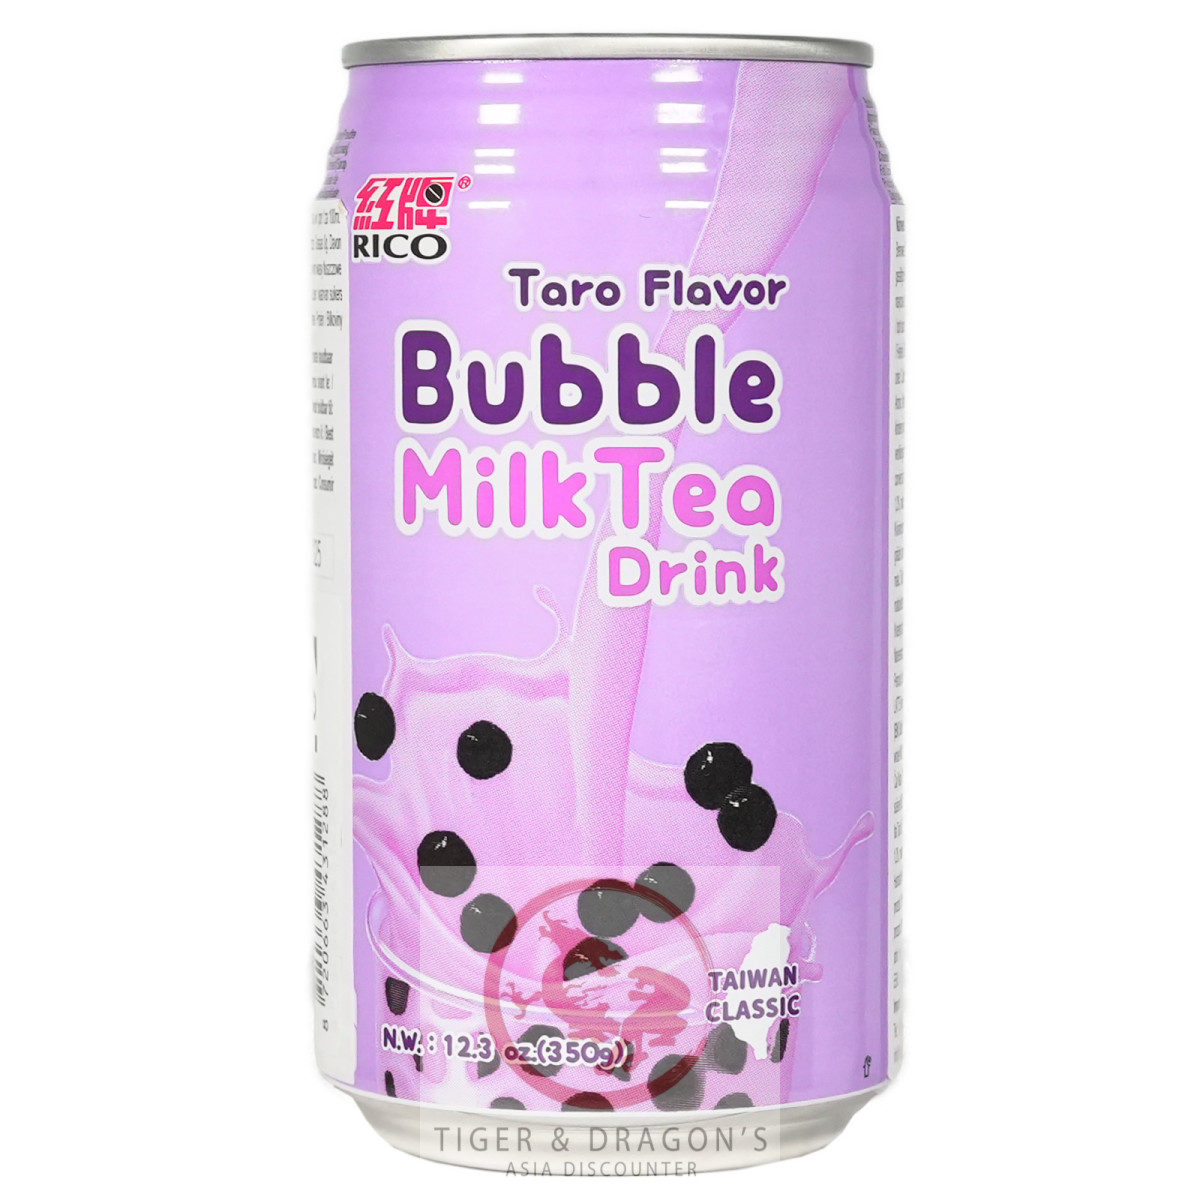 Rico Bubble Tea Taro Flavor Milk Tea 350g zzgl....